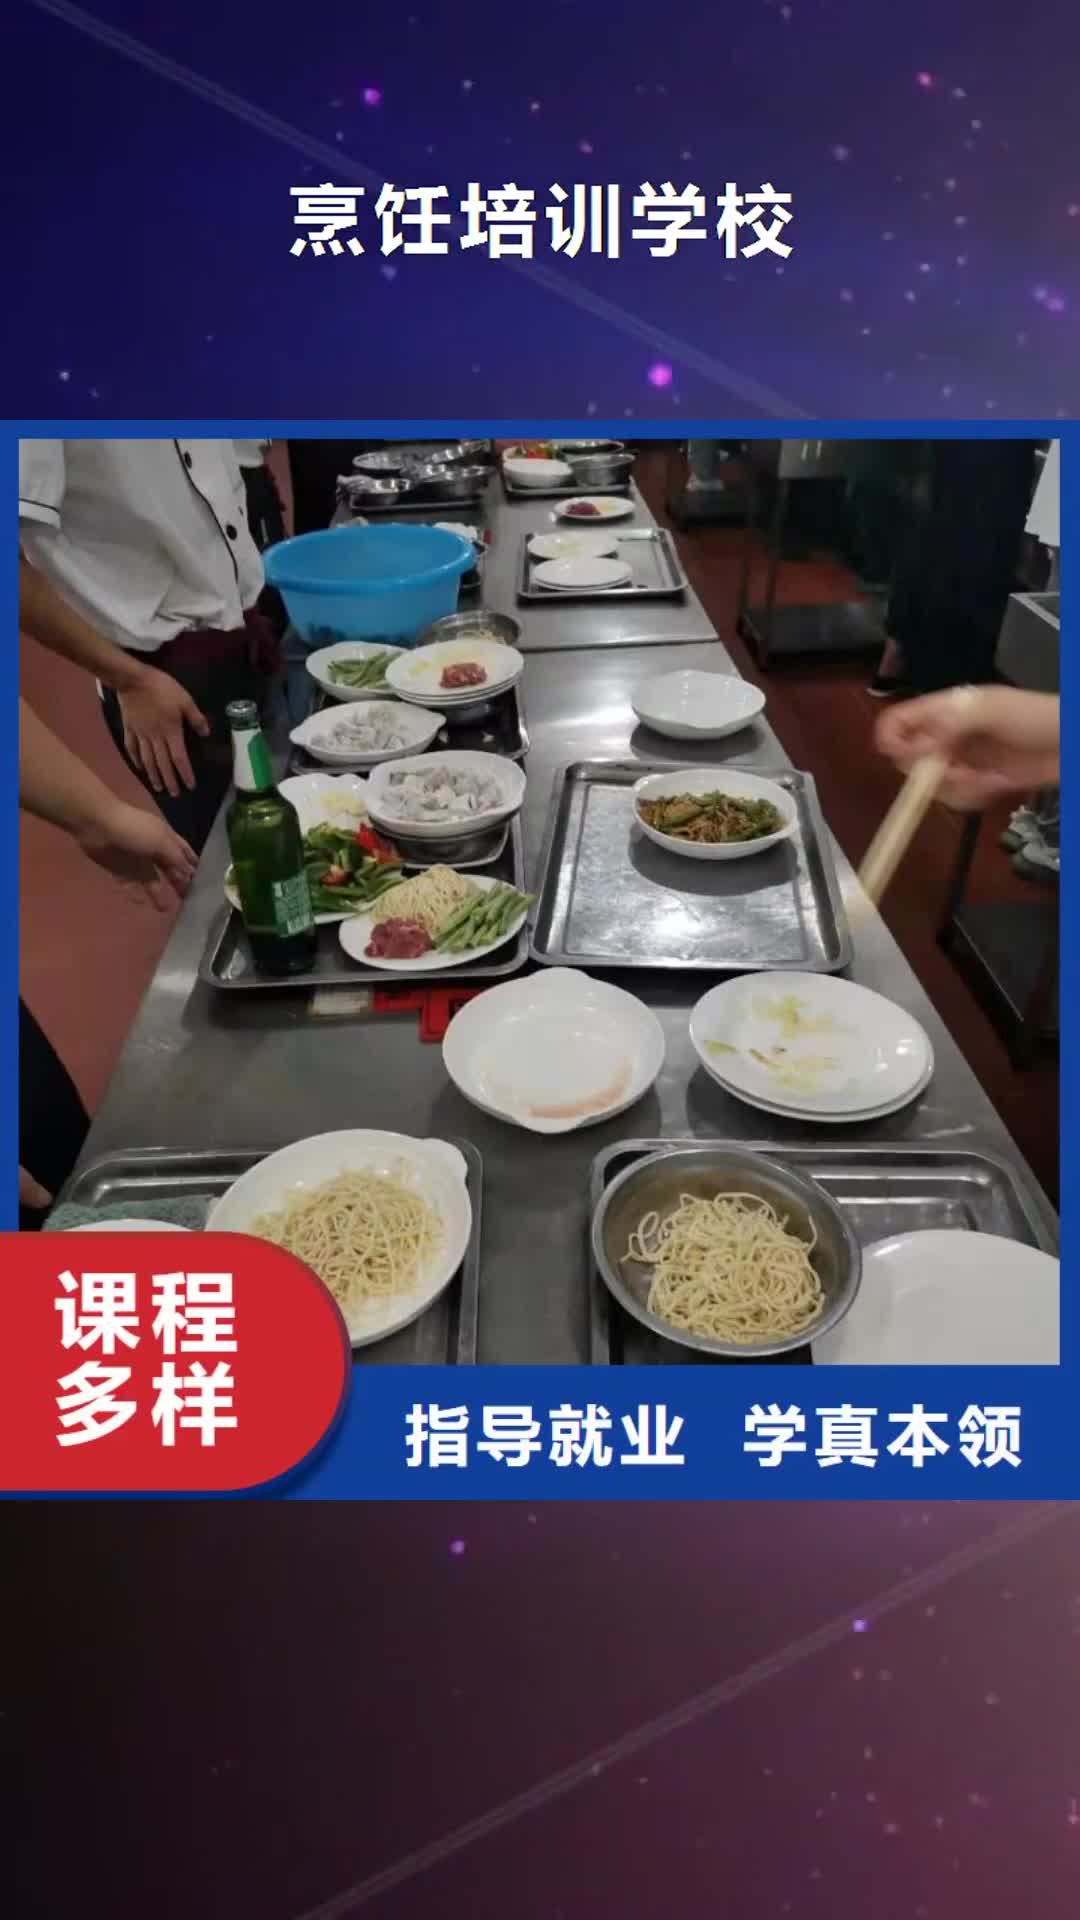 黄南【烹饪培训学校】,哪里能学厨师烹饪指导就业